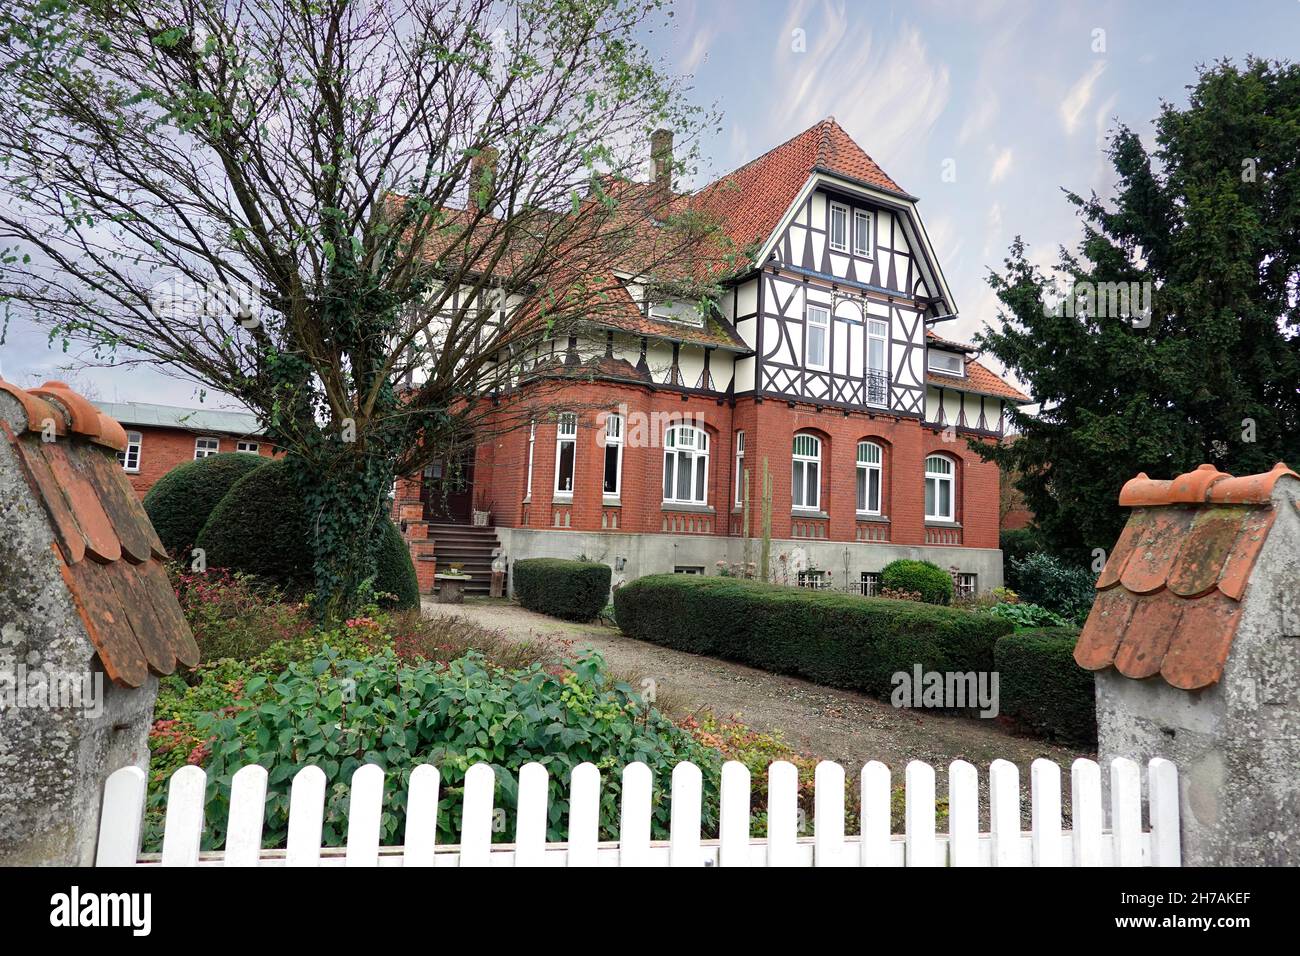 denkmalgeschütztes Wohnhaus in Fachwerk-Ziegel-Bauweise, Niedersachsen, Deutschland, Hansestadt Uelzen Stock Photo